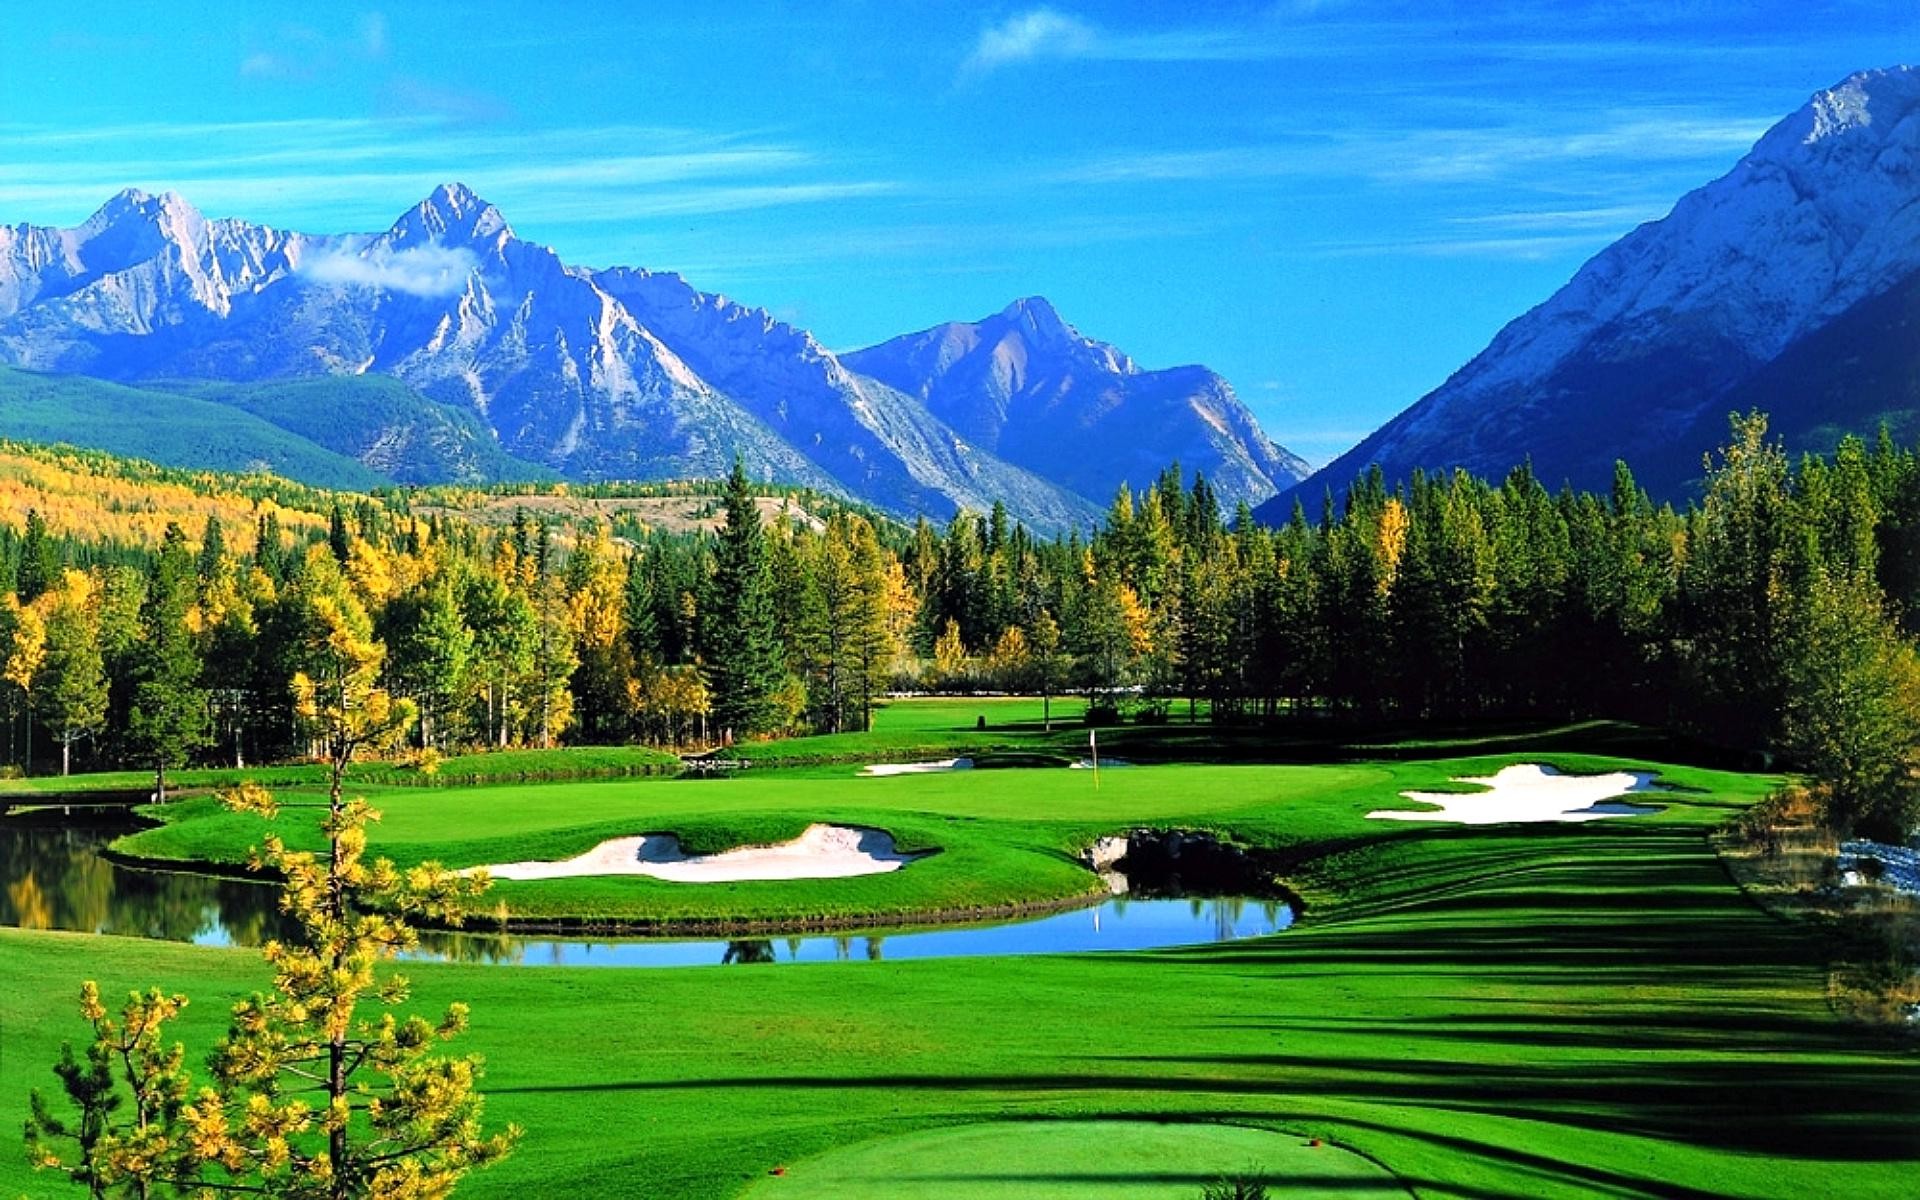 Golf Background Image